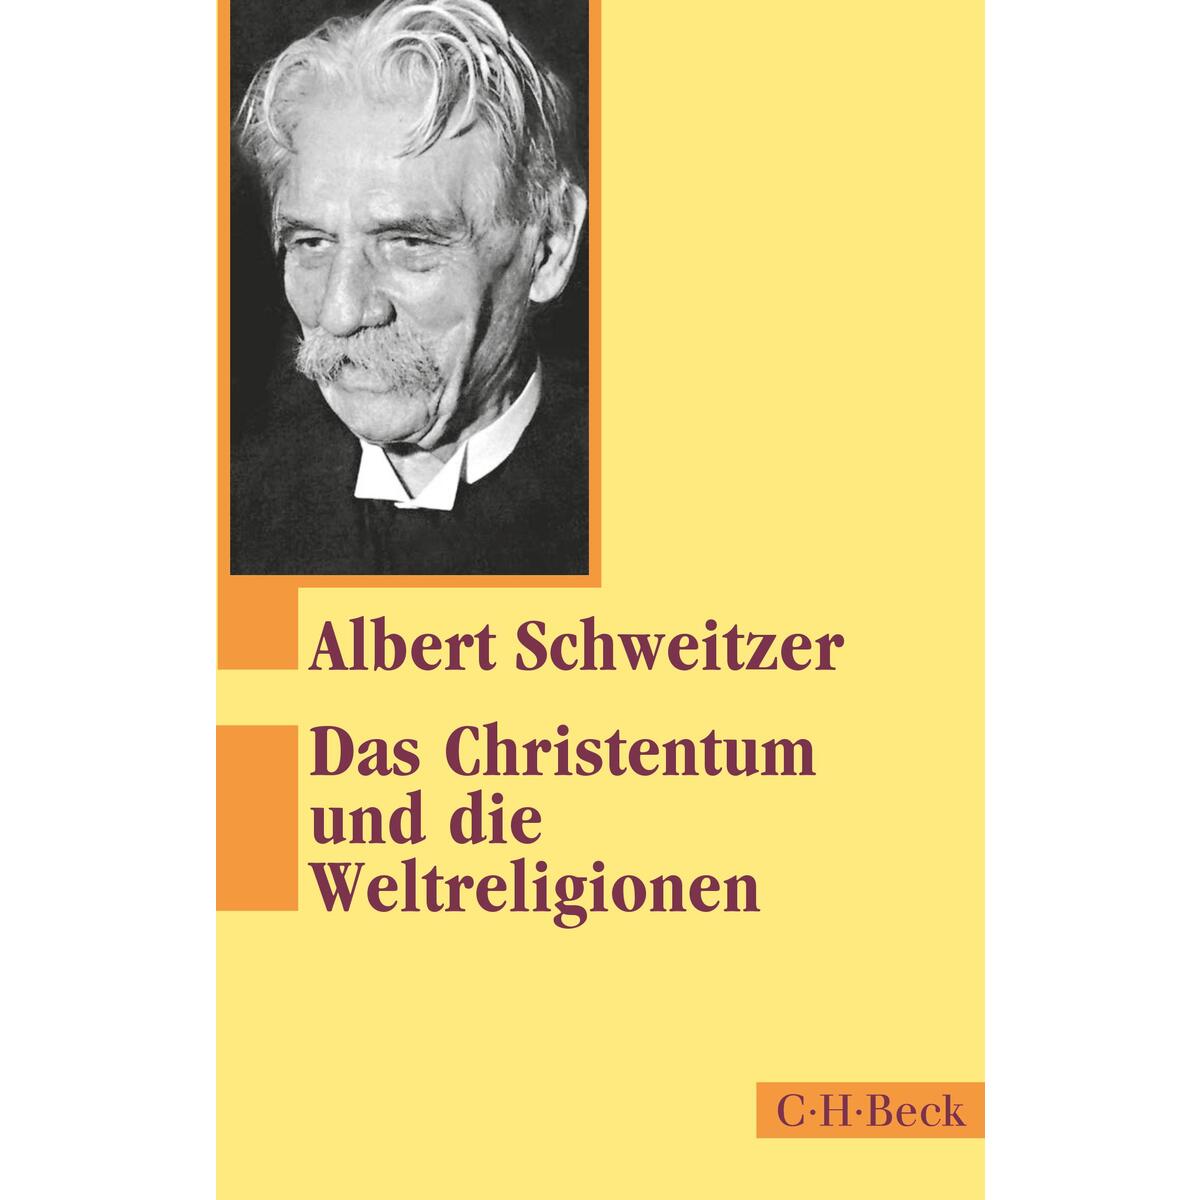 Das Christentum und die Weltreligionen von C.H. Beck